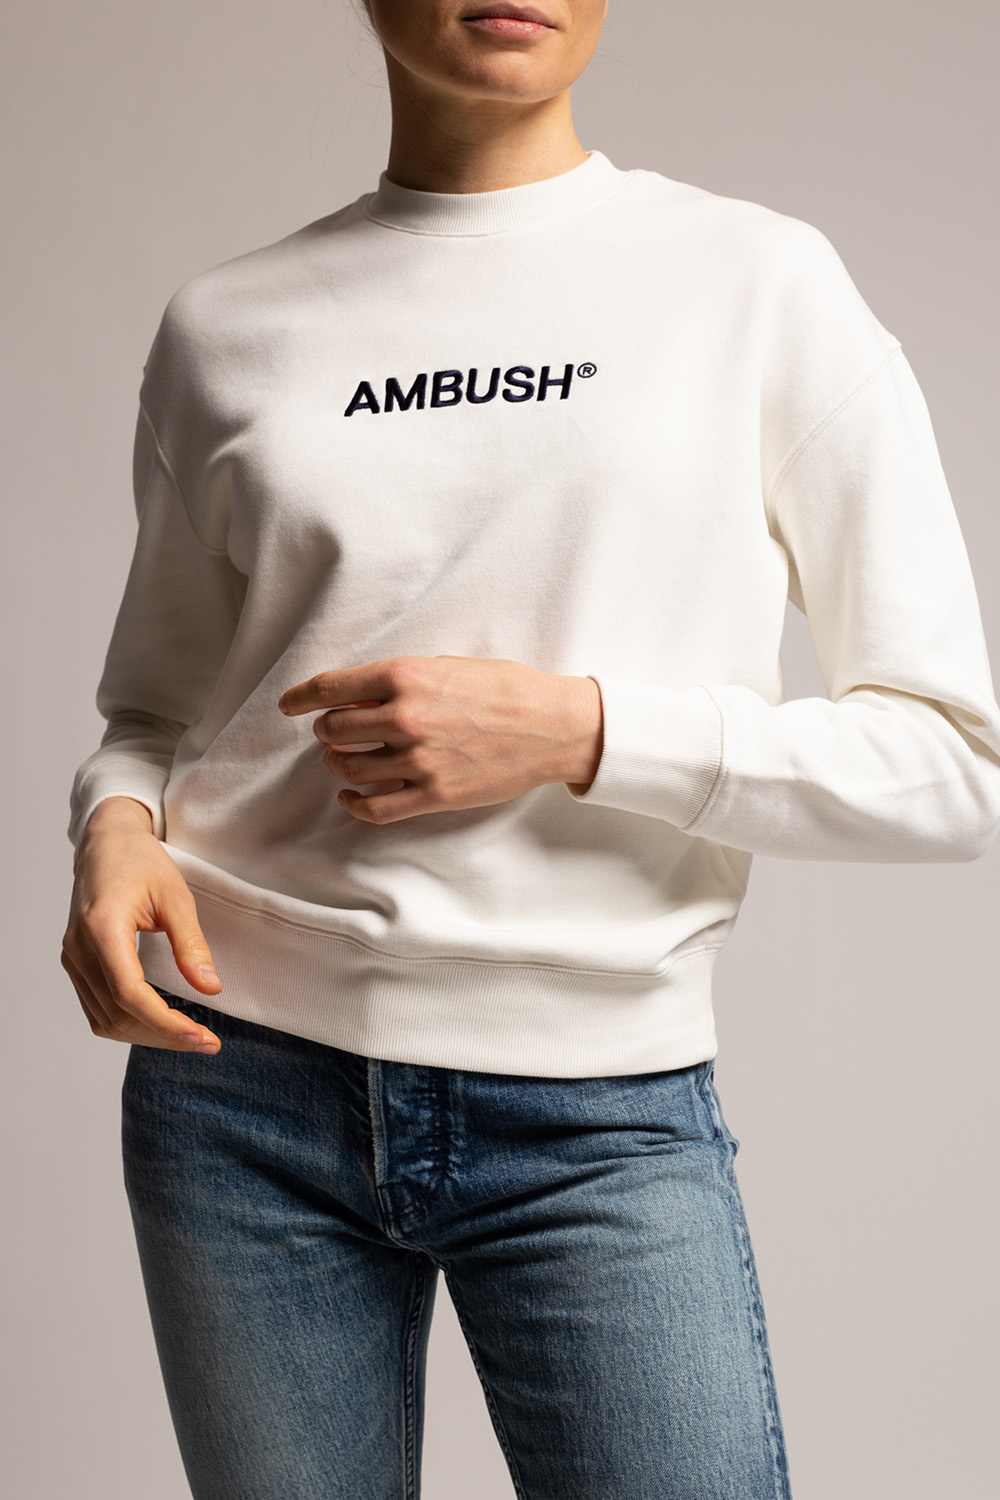 Ambush Michael Kors short sleeved polo shirt